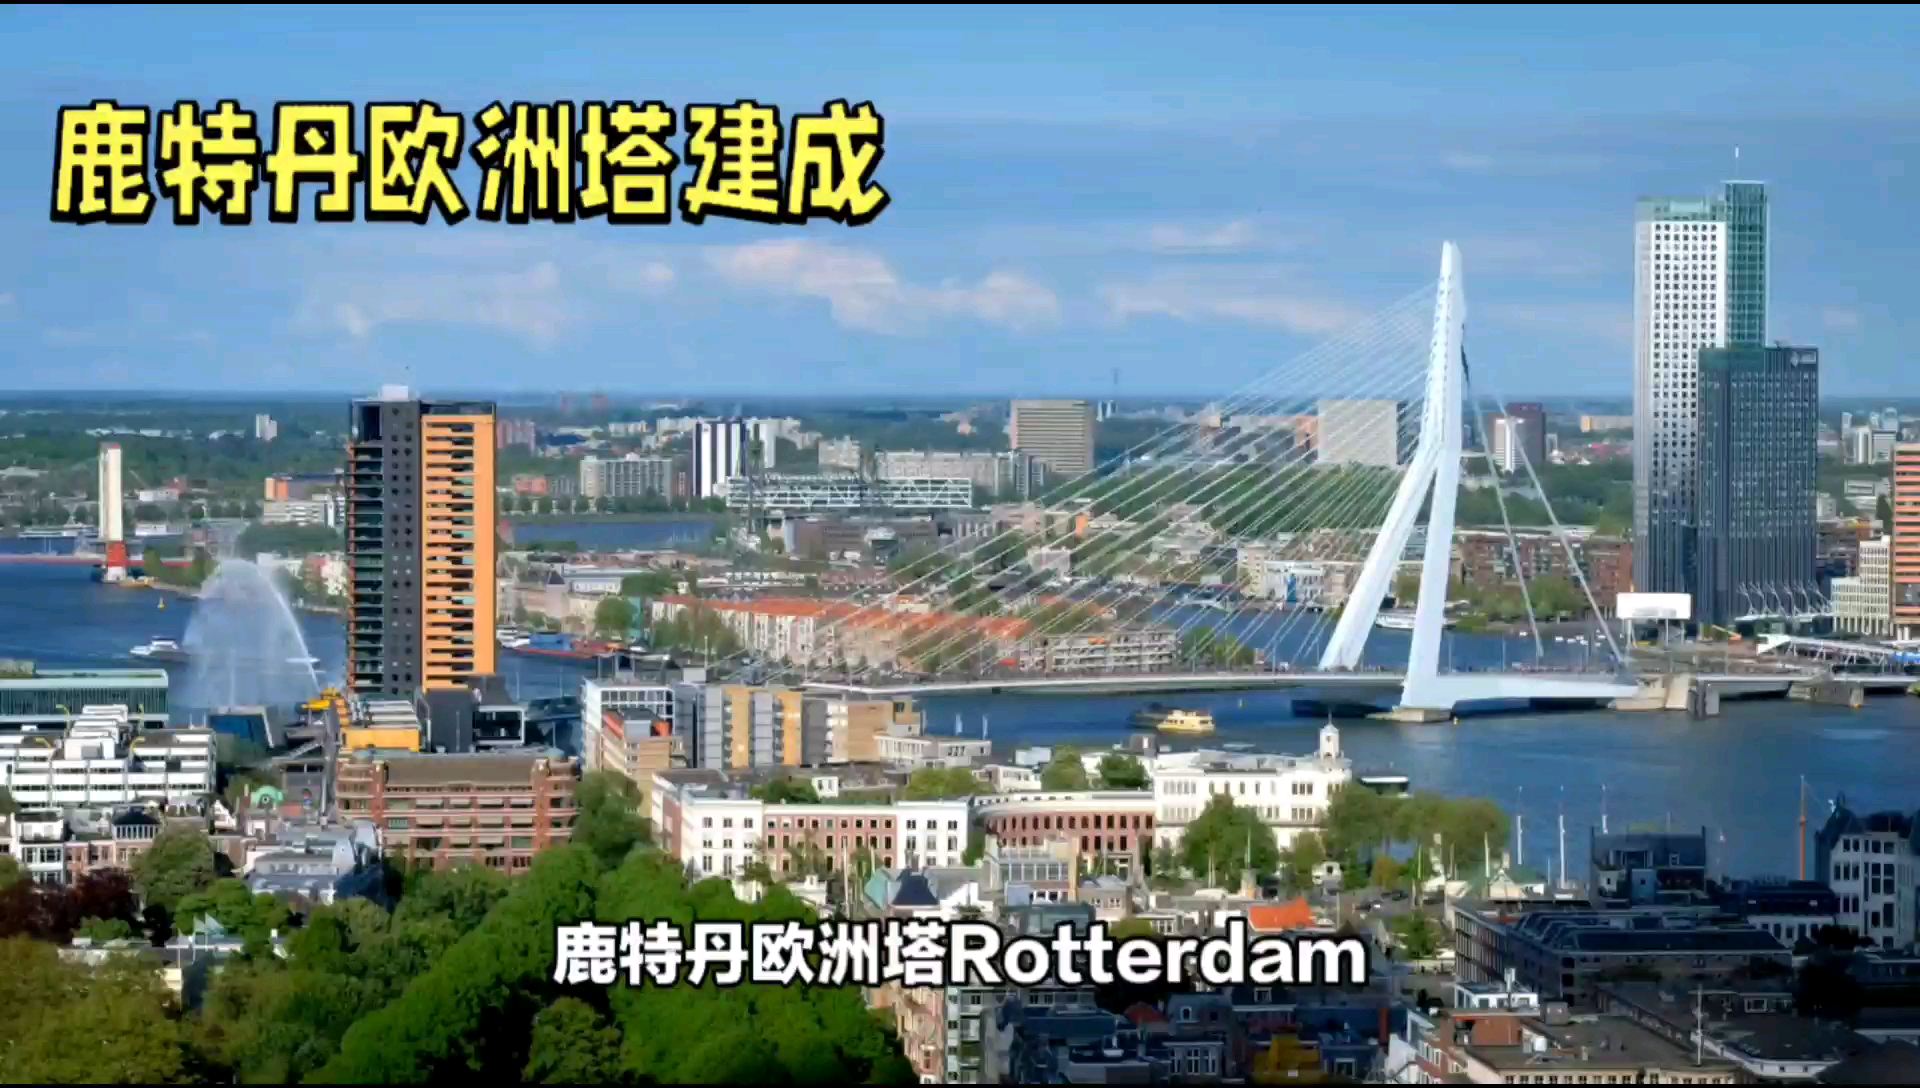 鹿特丹欧洲塔（Rotterdam Eurotower）是荷兰鹿特丹市的一座摩天大楼，位于新马斯河畔，